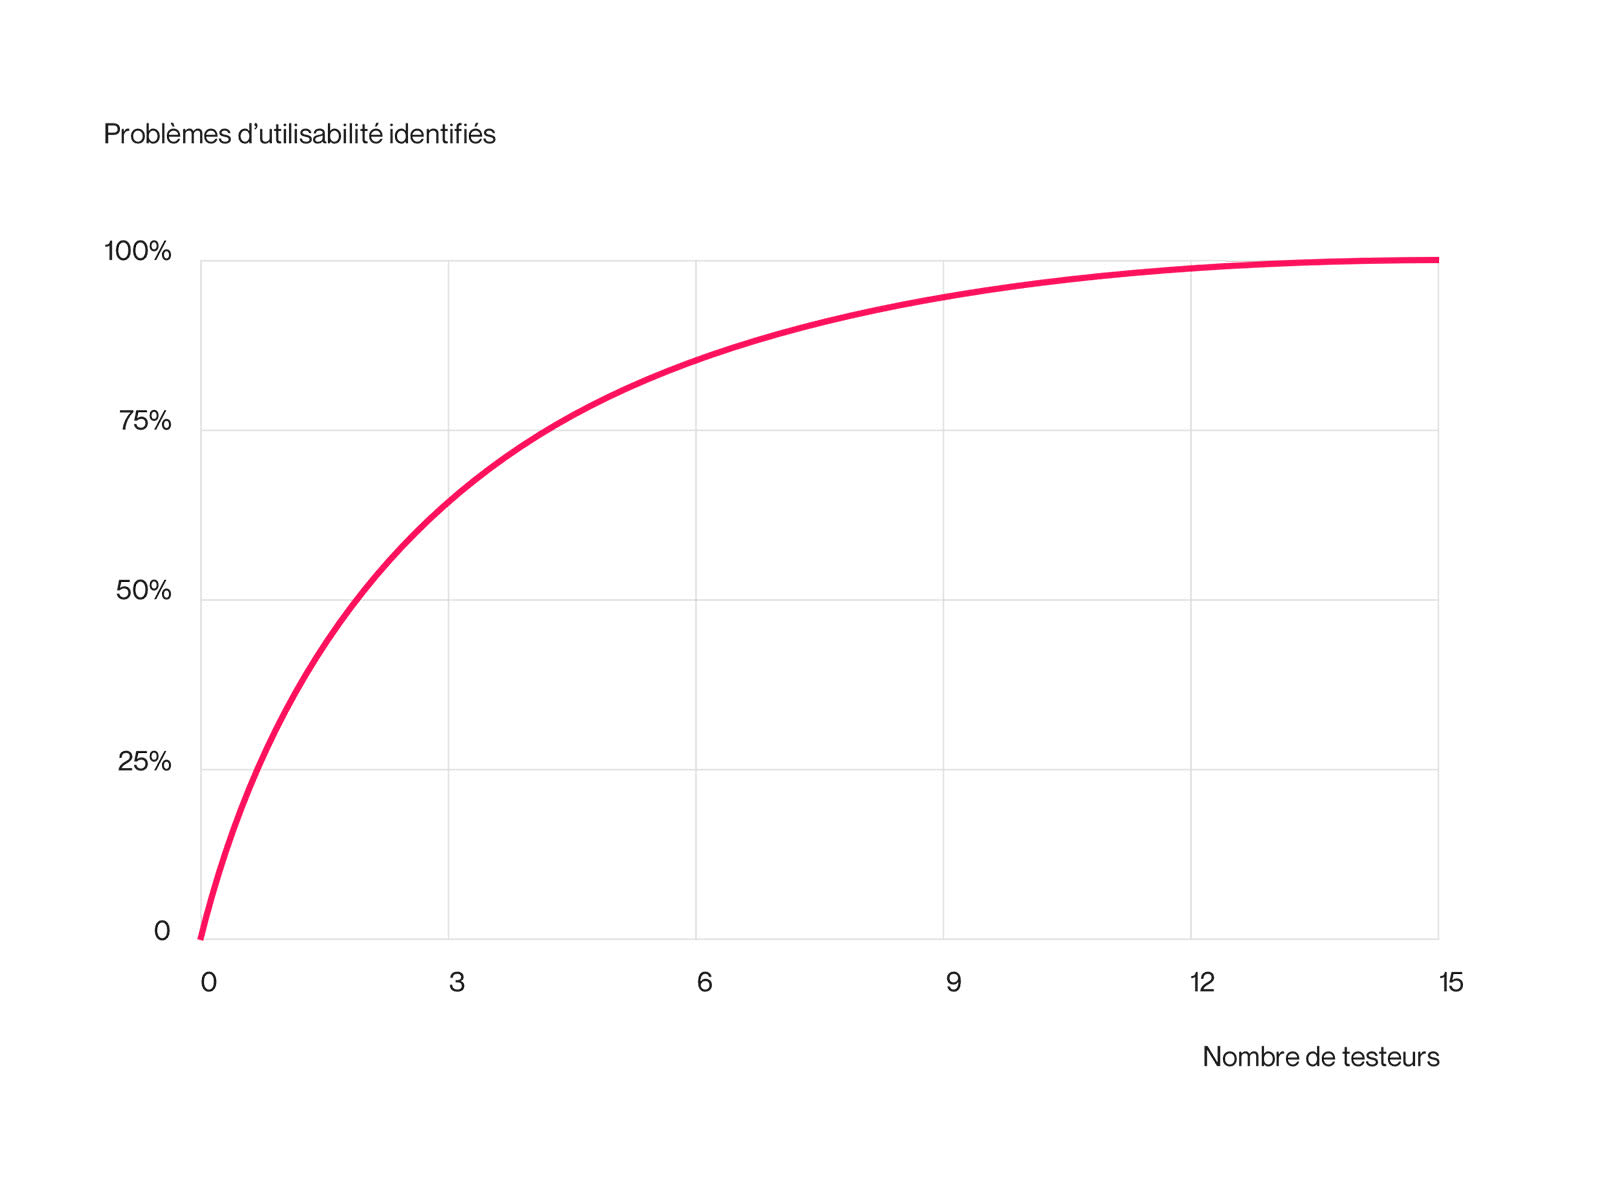 Comme le souligne Jakob Nielsen, cela se remarque nettement sur le graphique, aucune anomalie n’est détectée lorsque le nombre de testeurs est de zéro.